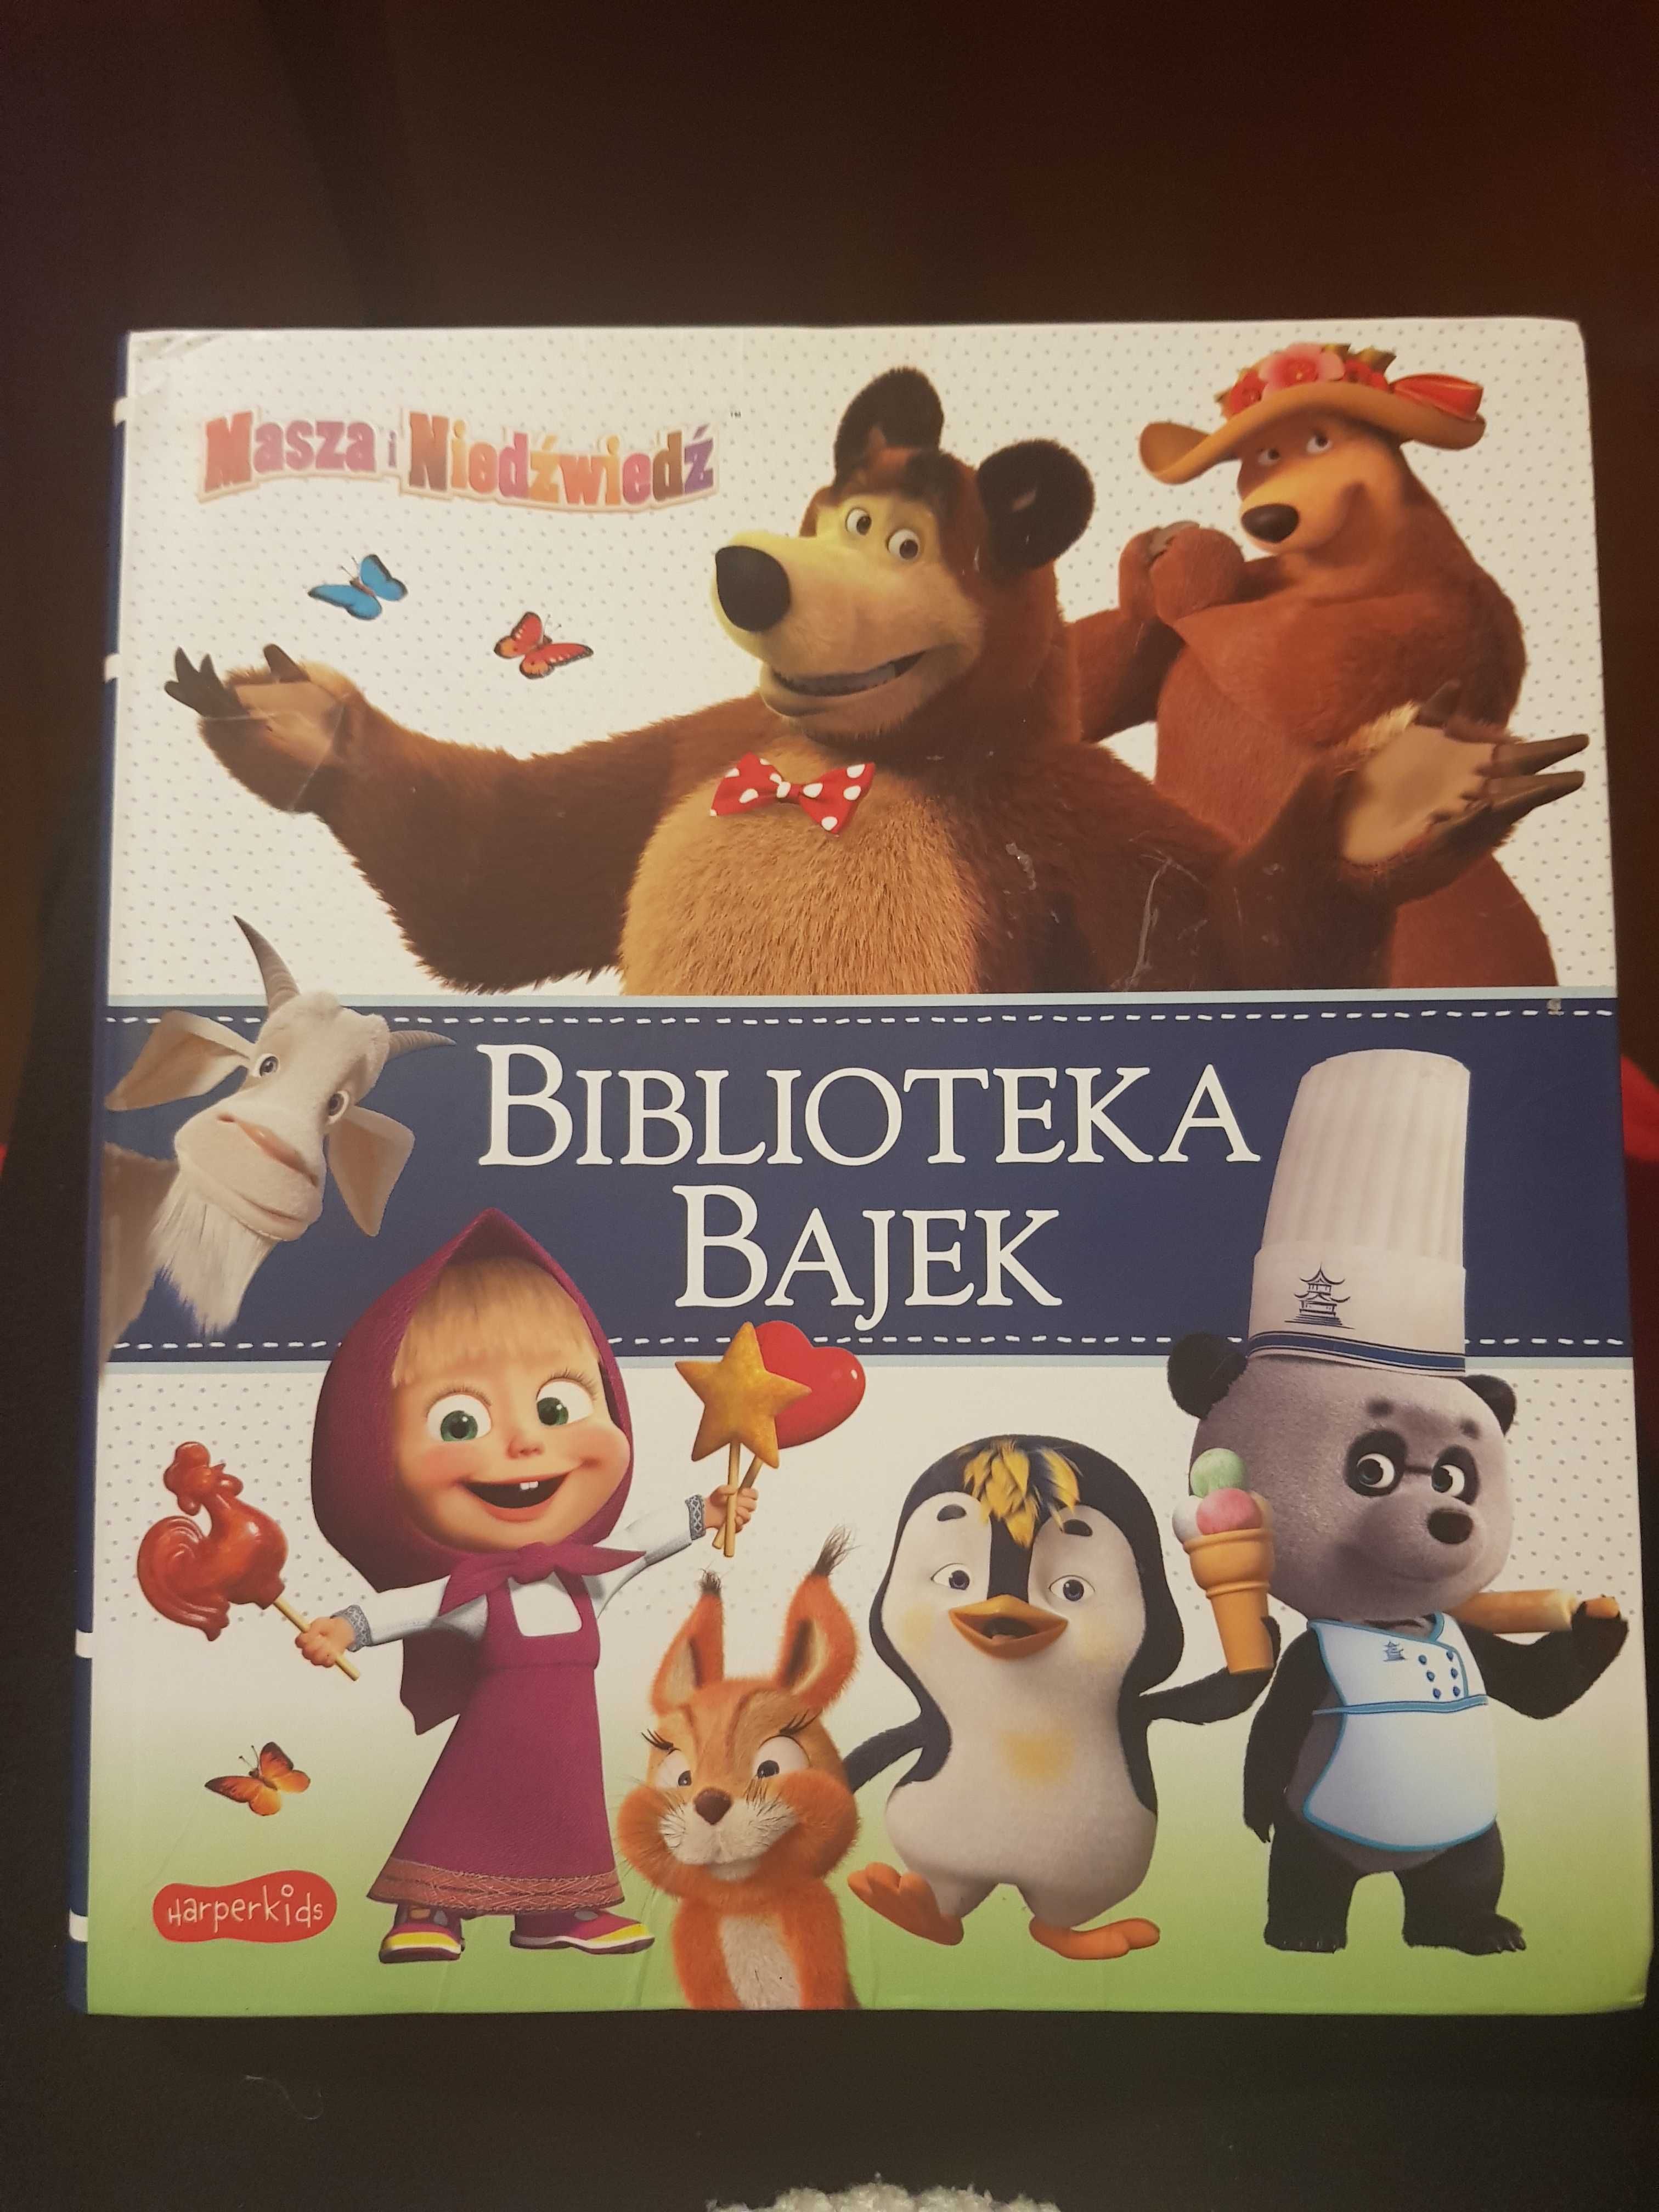 Masza i Niedźwiedź - Biblioteka Bajek